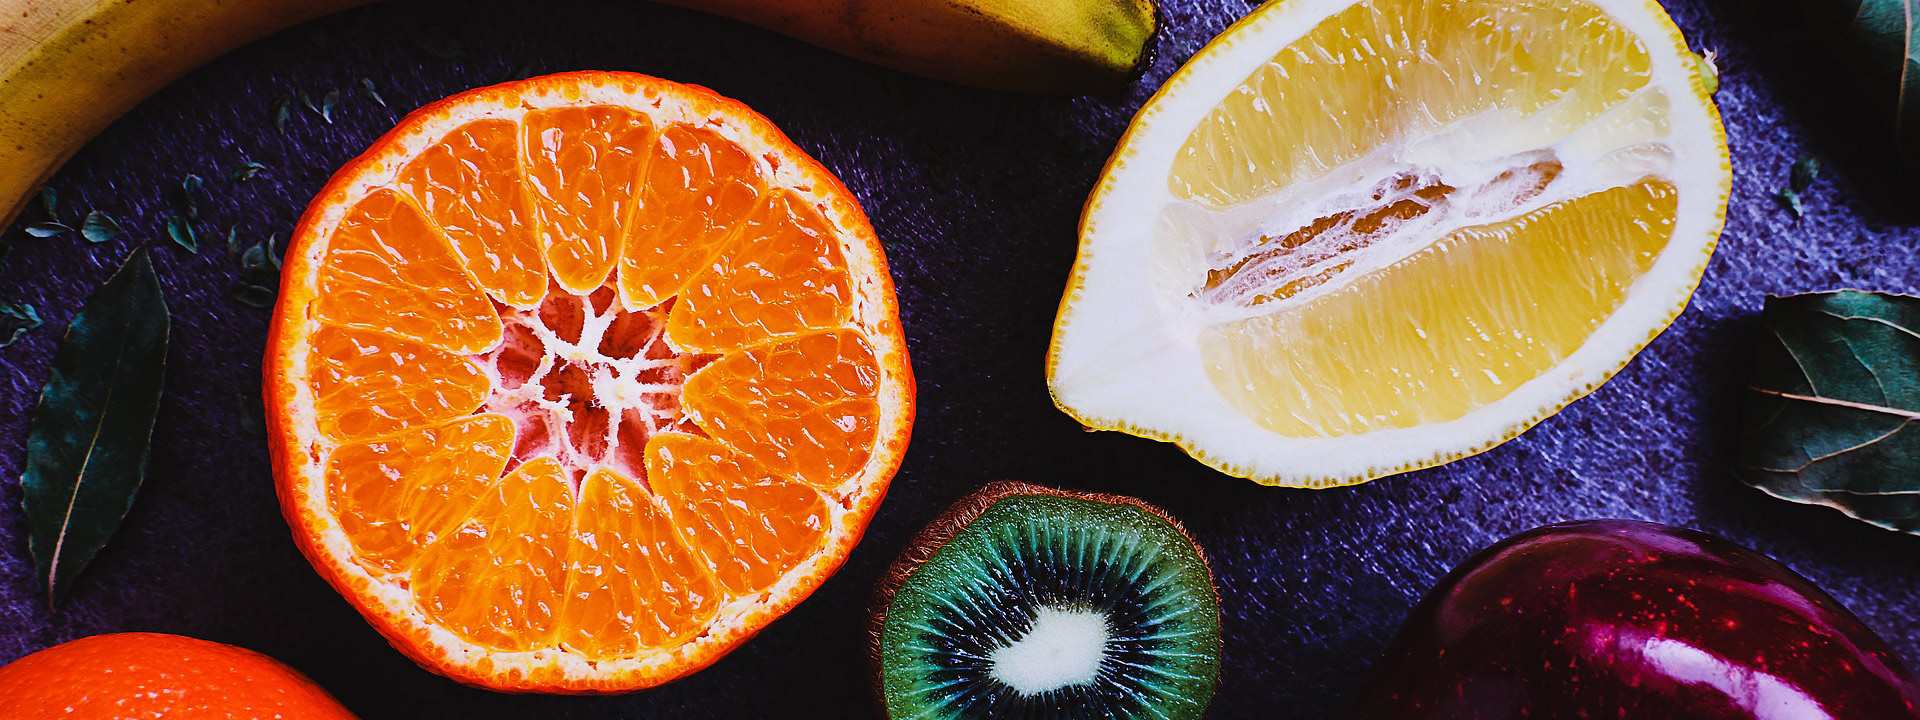 Zu den häufigsten Ernährungsmythen zählt, dass Vitamin C gegen Erkältung hilft.